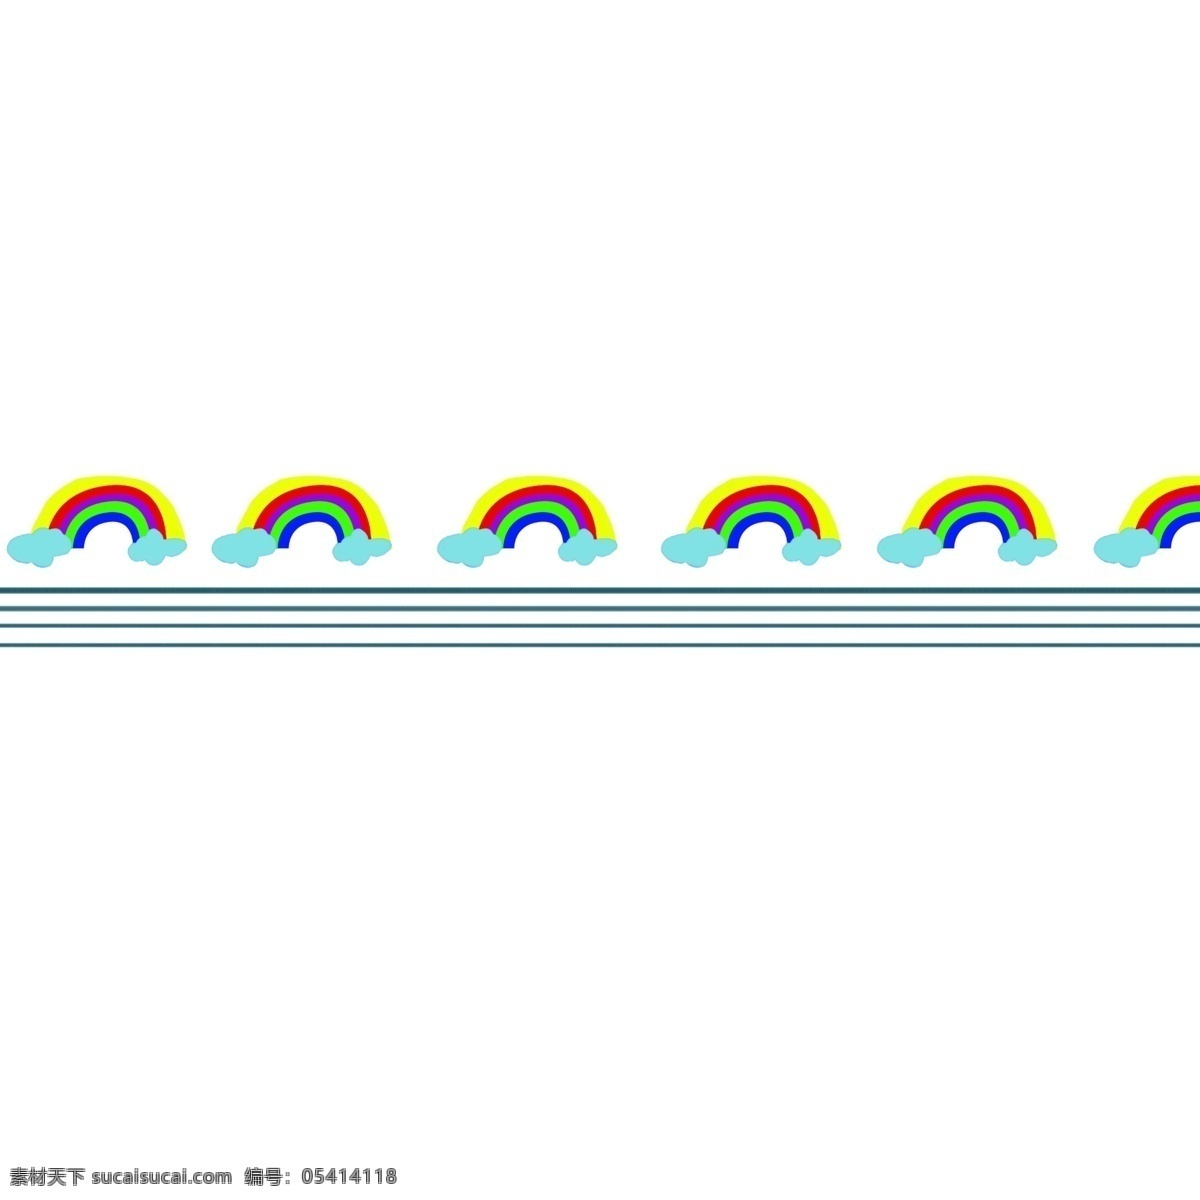 彩虹 分割线 手绘 插画 彩虹分割线 手绘分割线 卡通分割线 创意分割线 分割线装饰 分割线插画